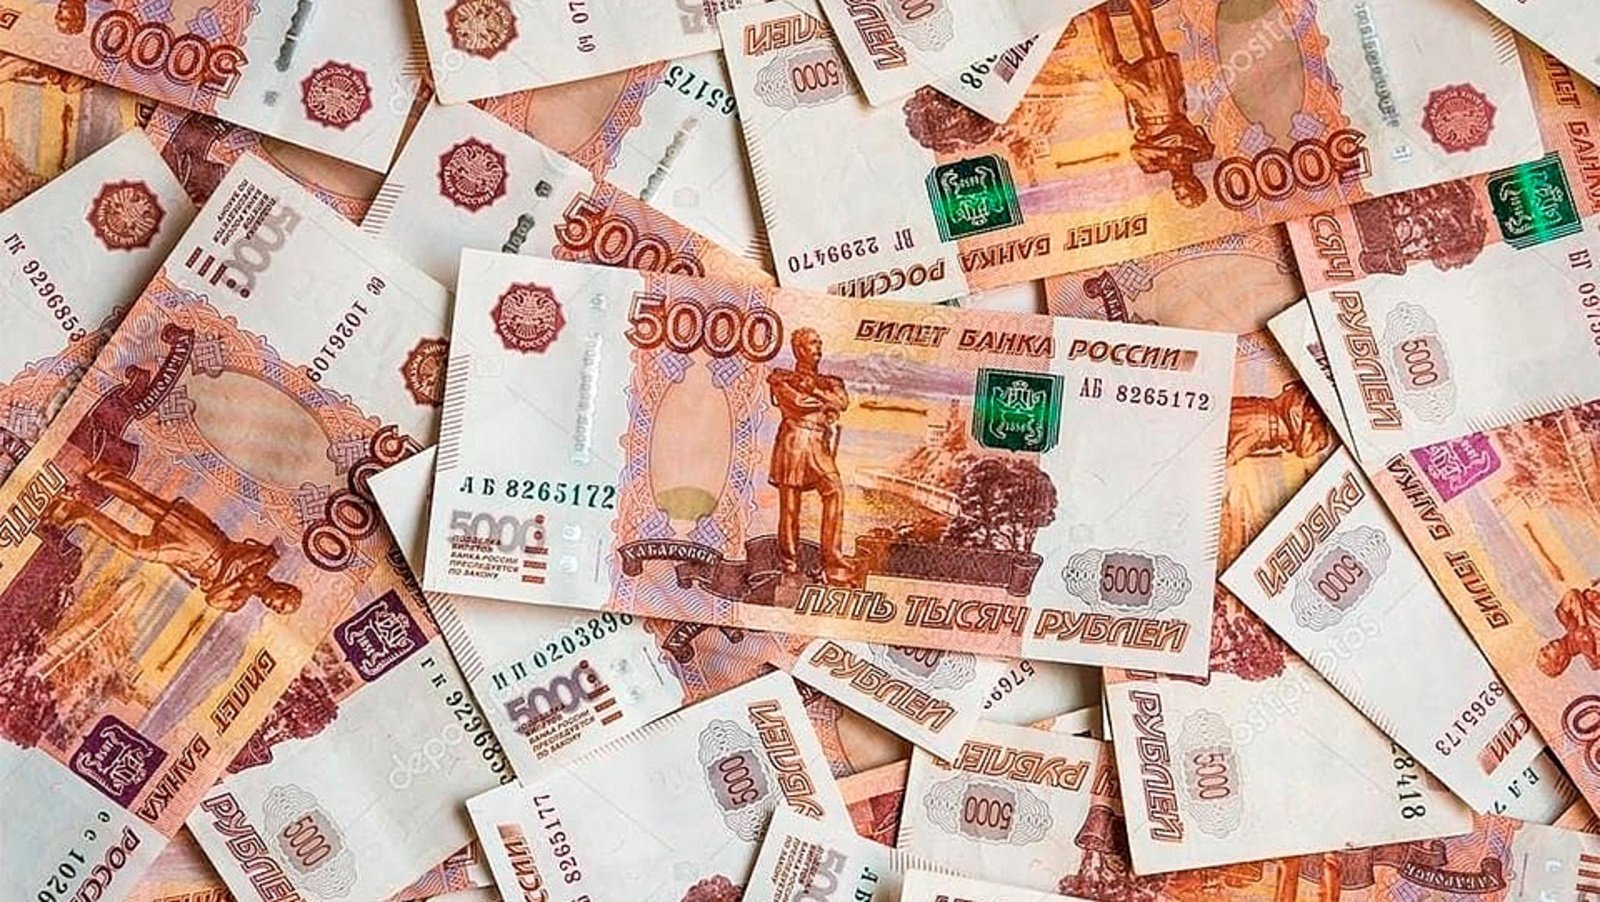 5000 рублей в интернете